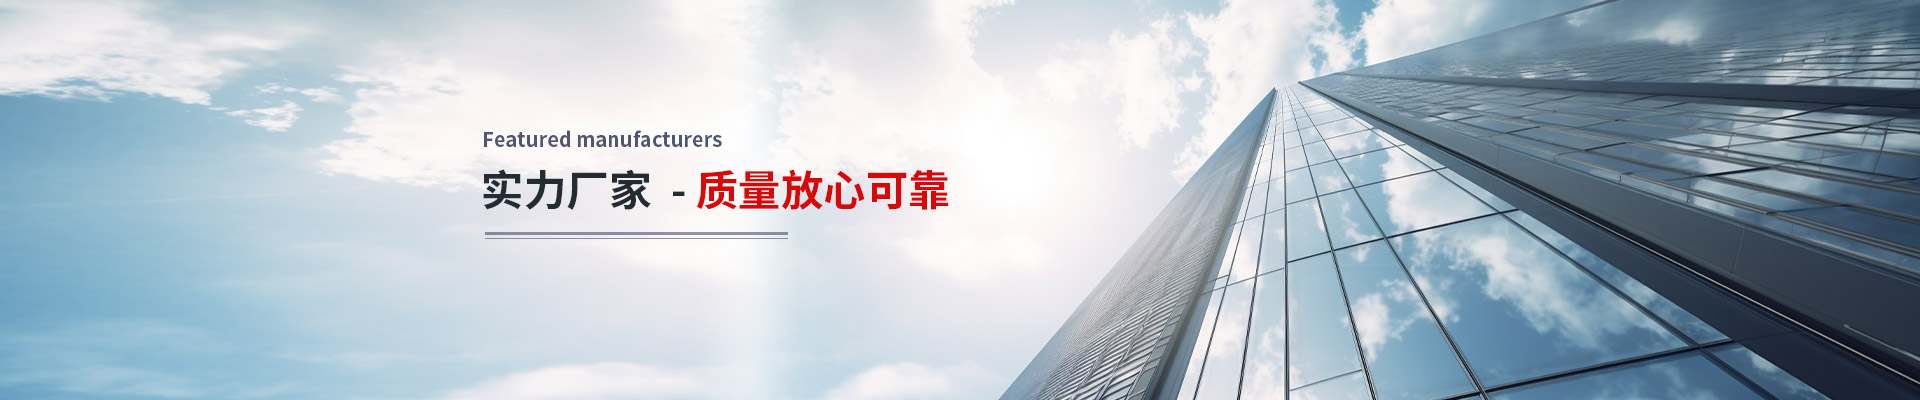 上海展凯幕墙工程有限公司公司介绍